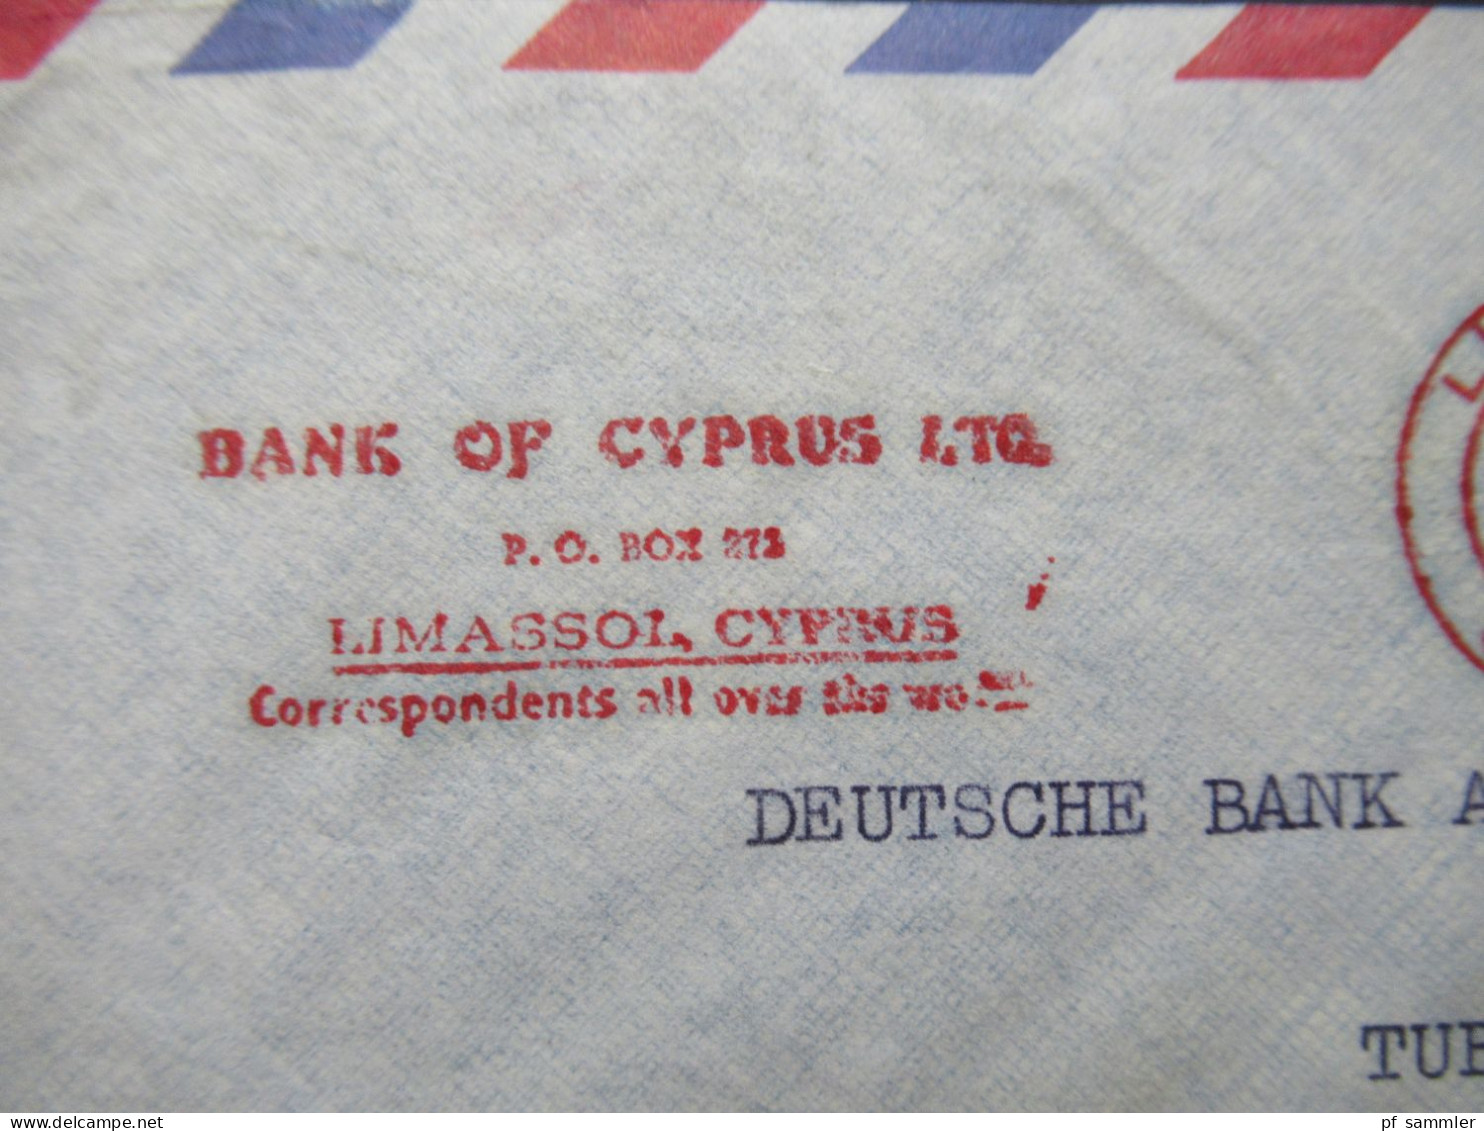 Zypern 1961 Par Avion Auslandsbrief Nach Tübingen Mit Freistempel AFS Limasol Cyprus Bank Of Cyprus LTD - Cartas